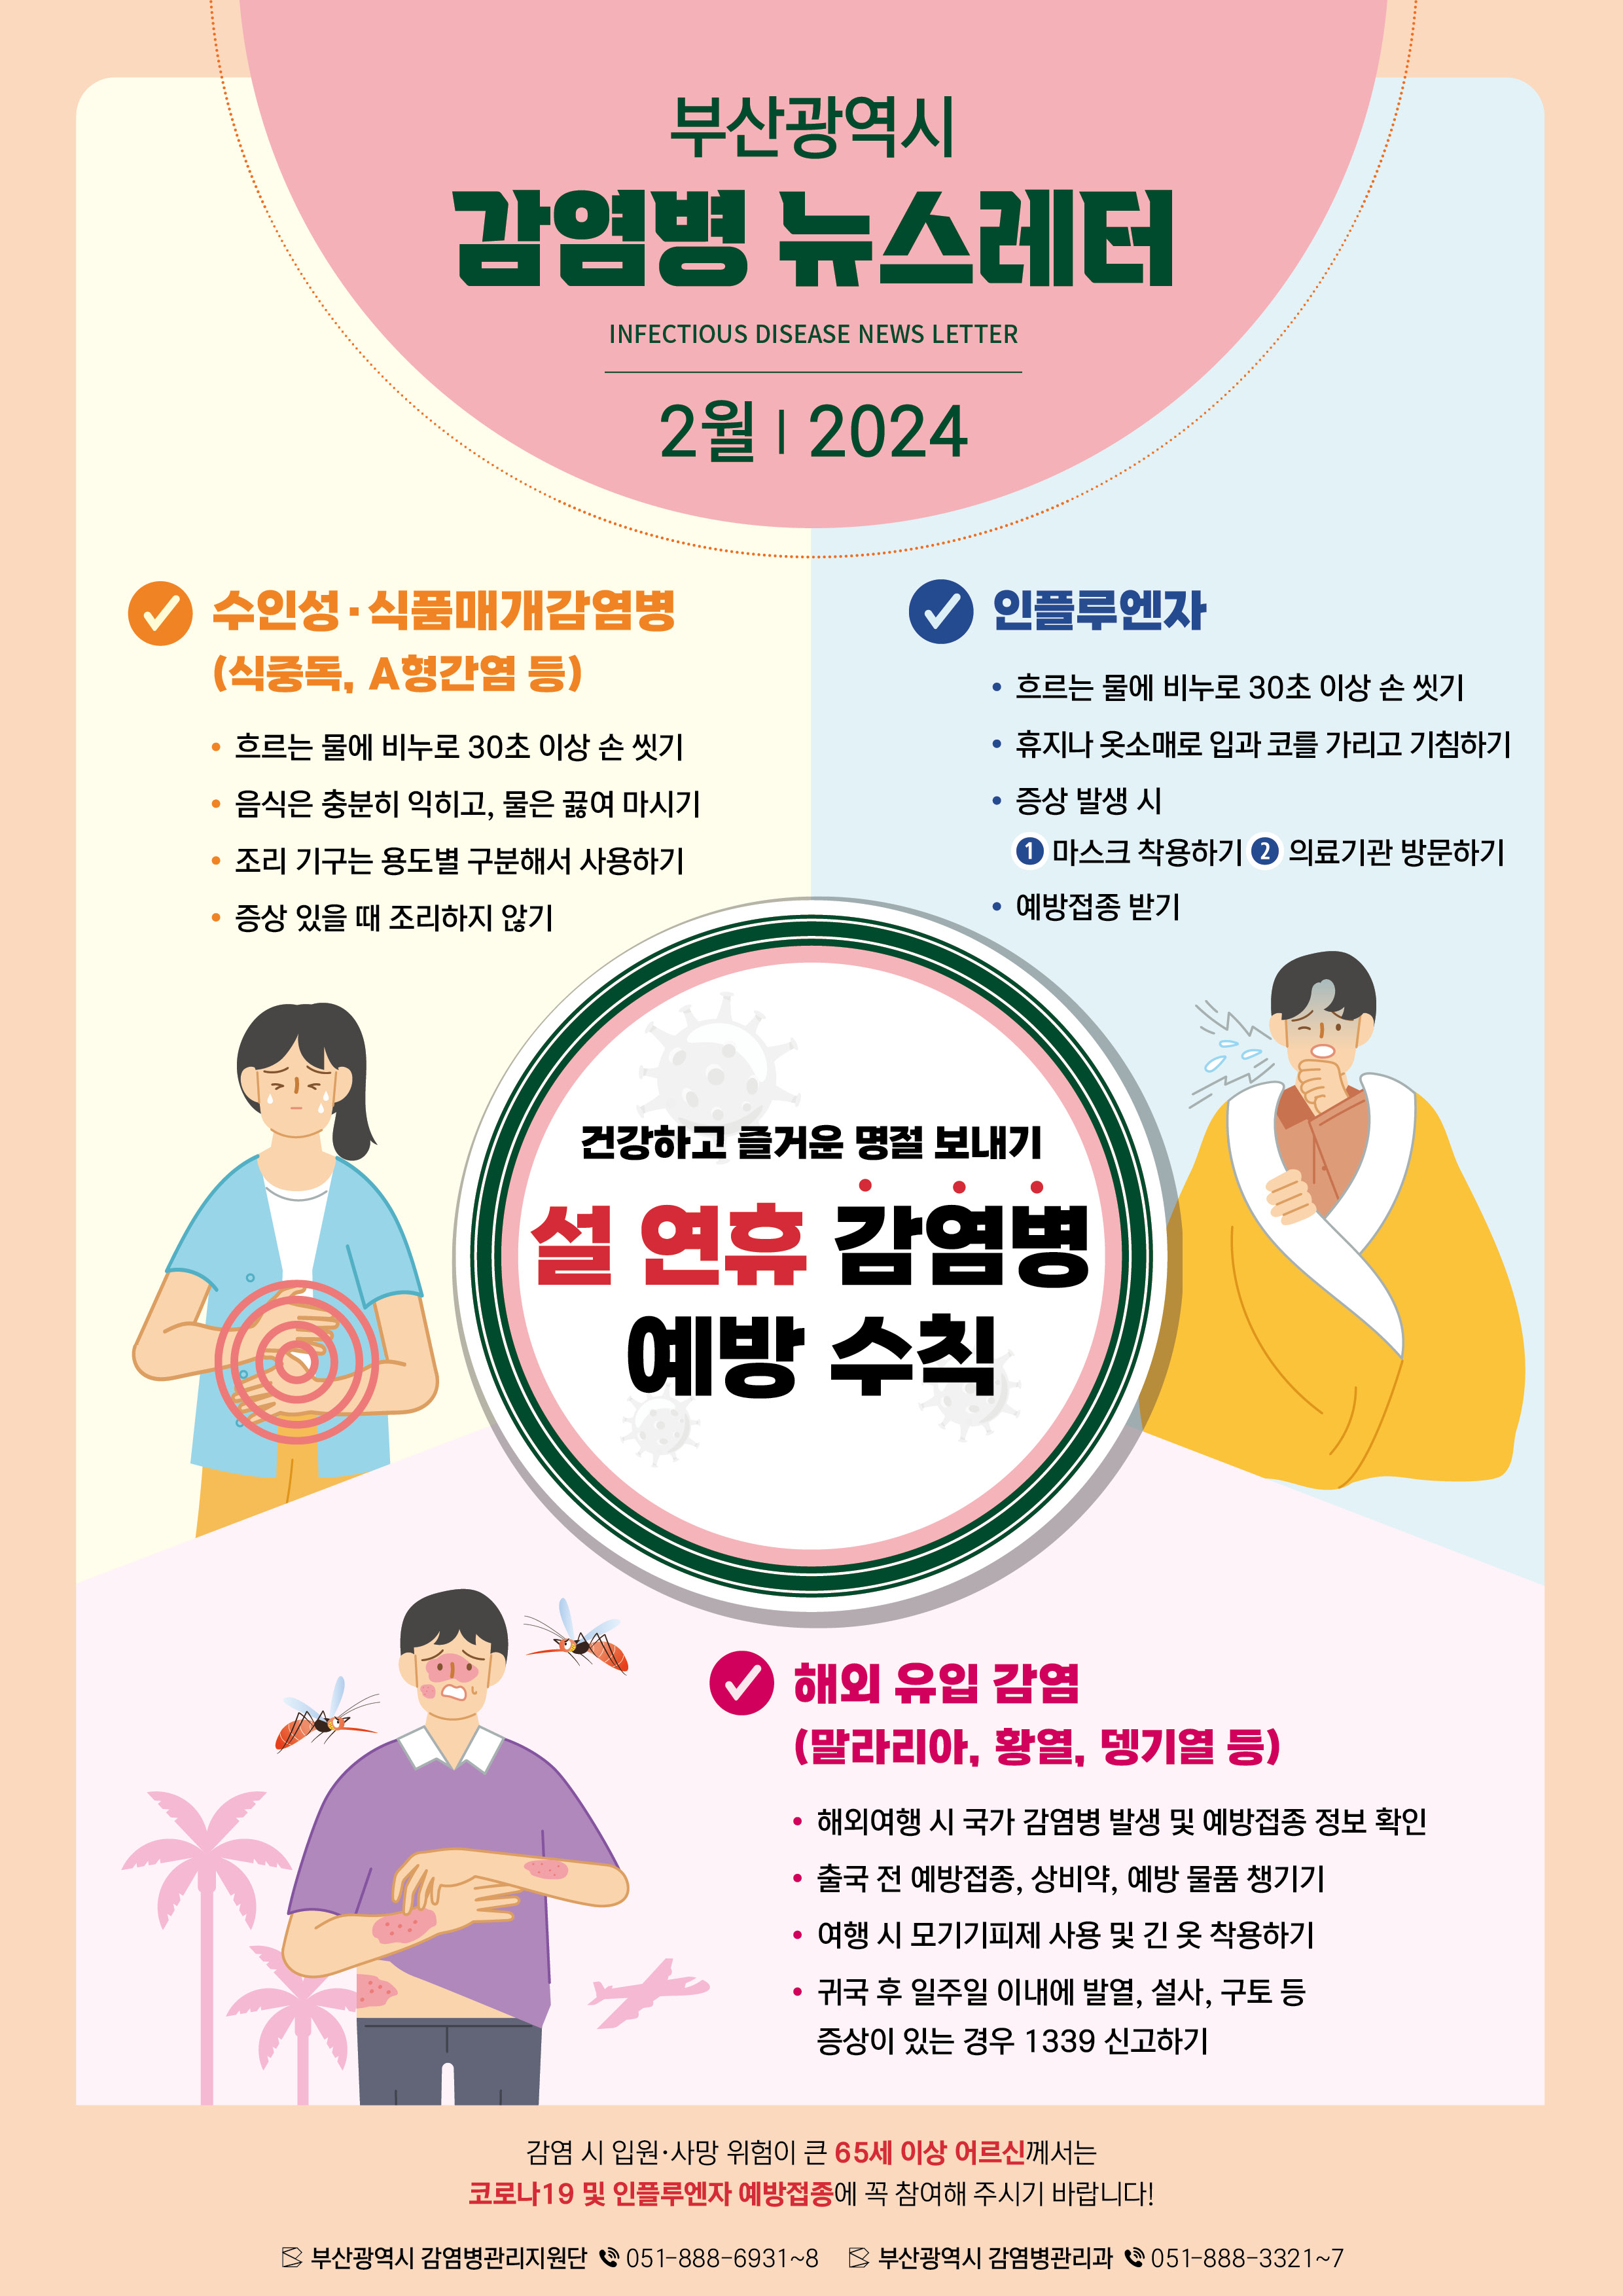 부산광역시 감염병 뉴스레터 INFECTIOUS DISEASE NEWS LETTER 2월ㅣ 2024
건강하고 즐거운 명절 보내기 